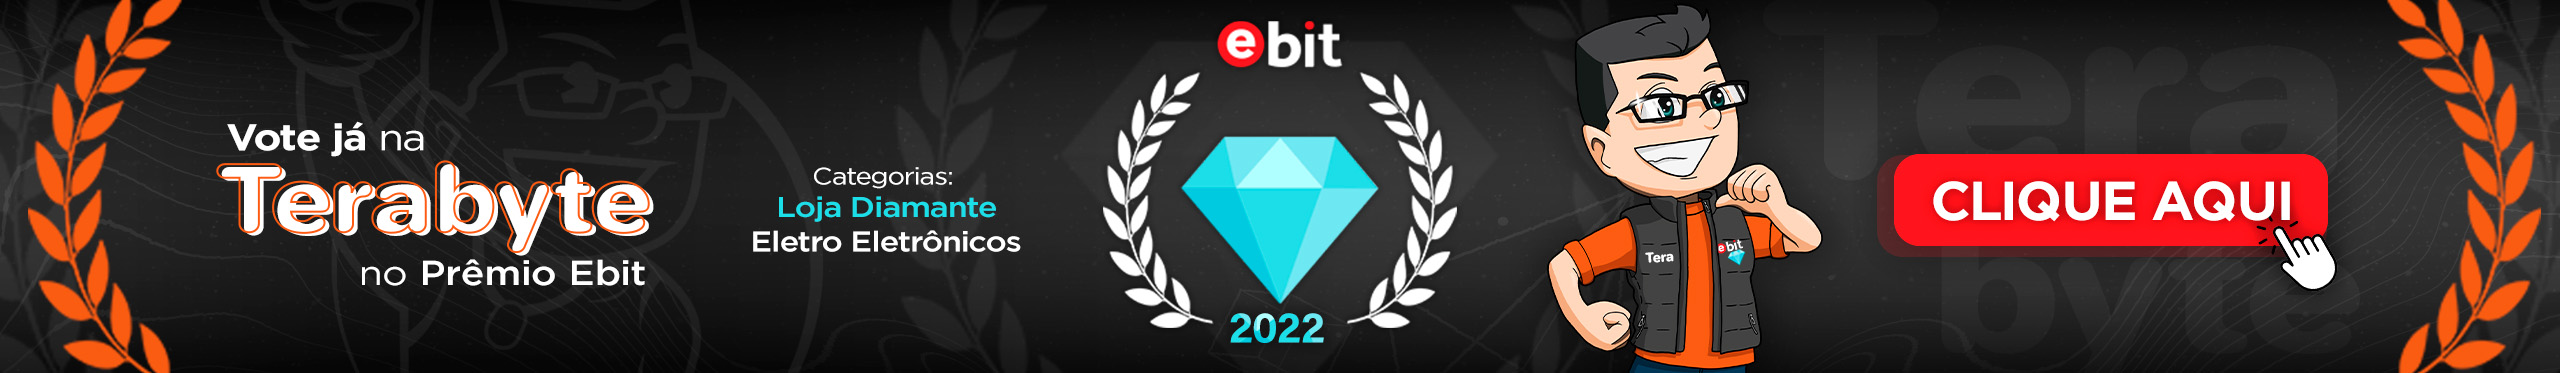 Vote na Terabyte para o Prêmio eBit 2022! Clique aqui e saiba mais.